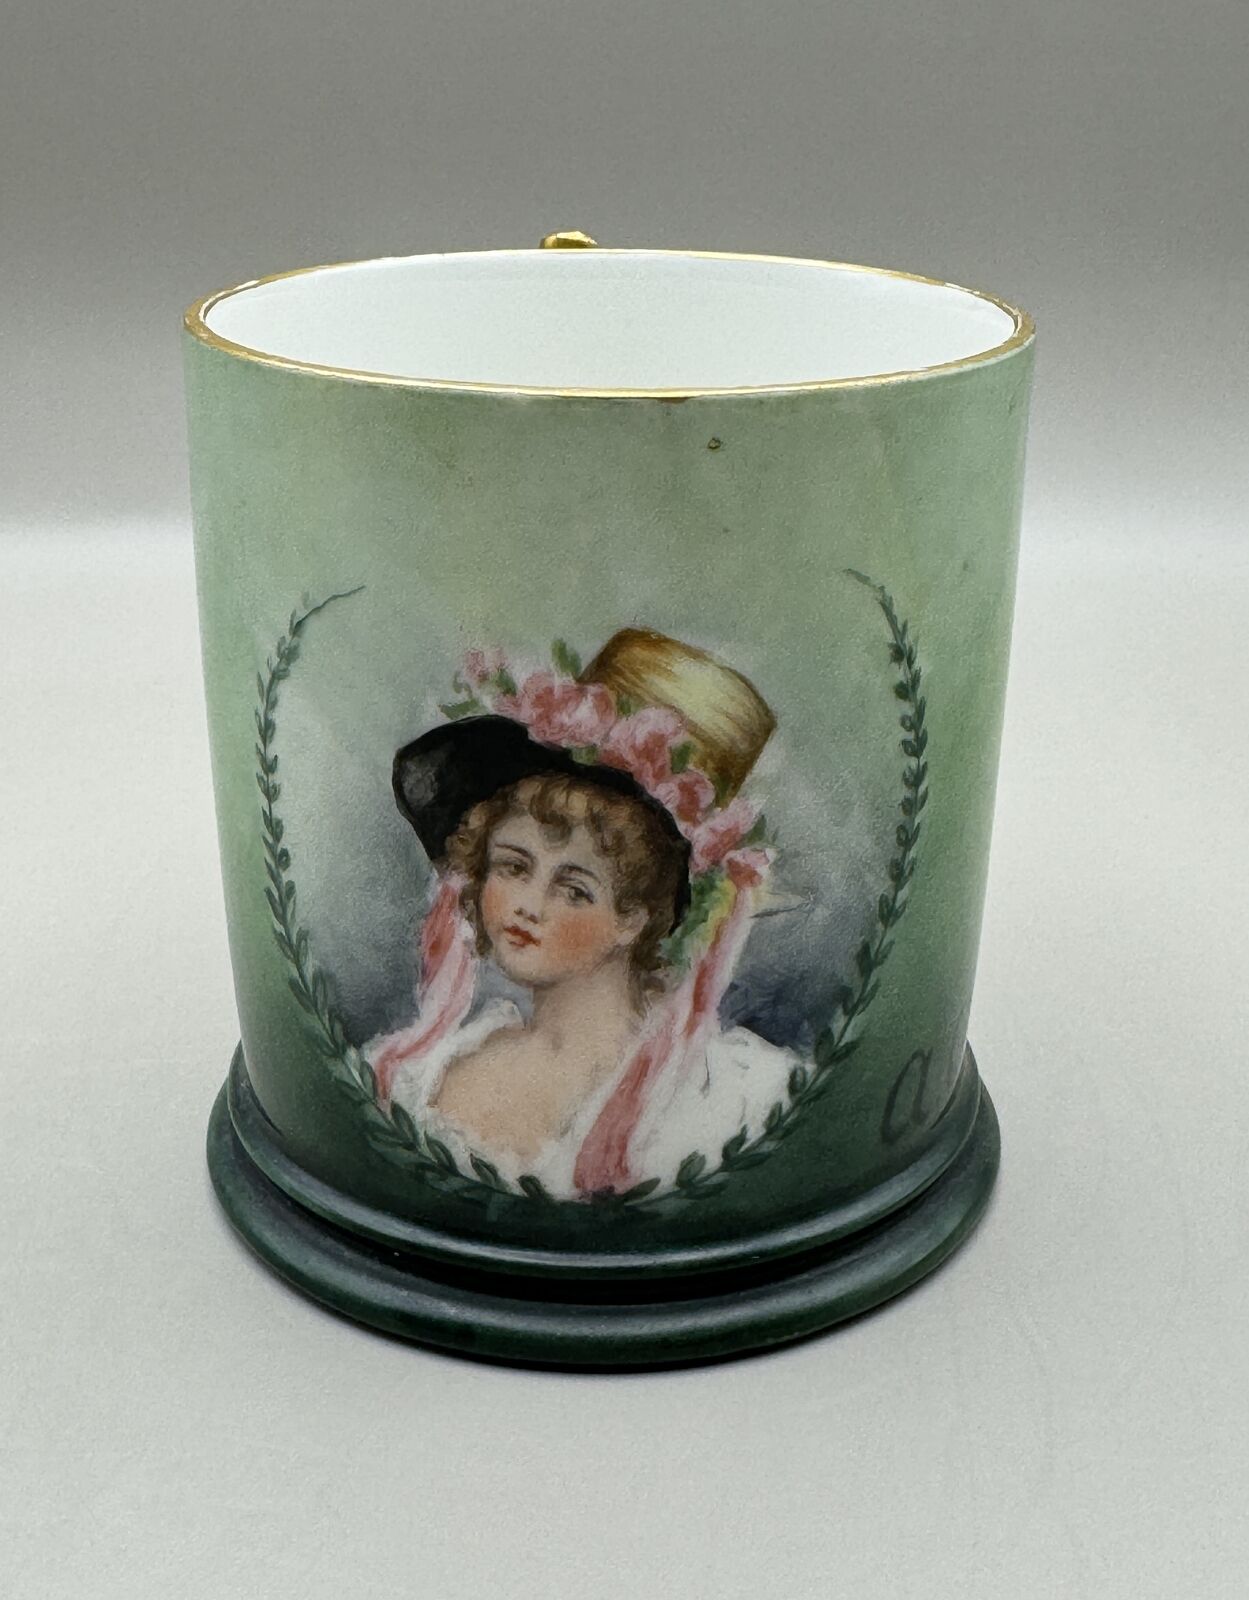 J.P. L. France Porcelain Coffee Cup, Hand-Painted Portrait